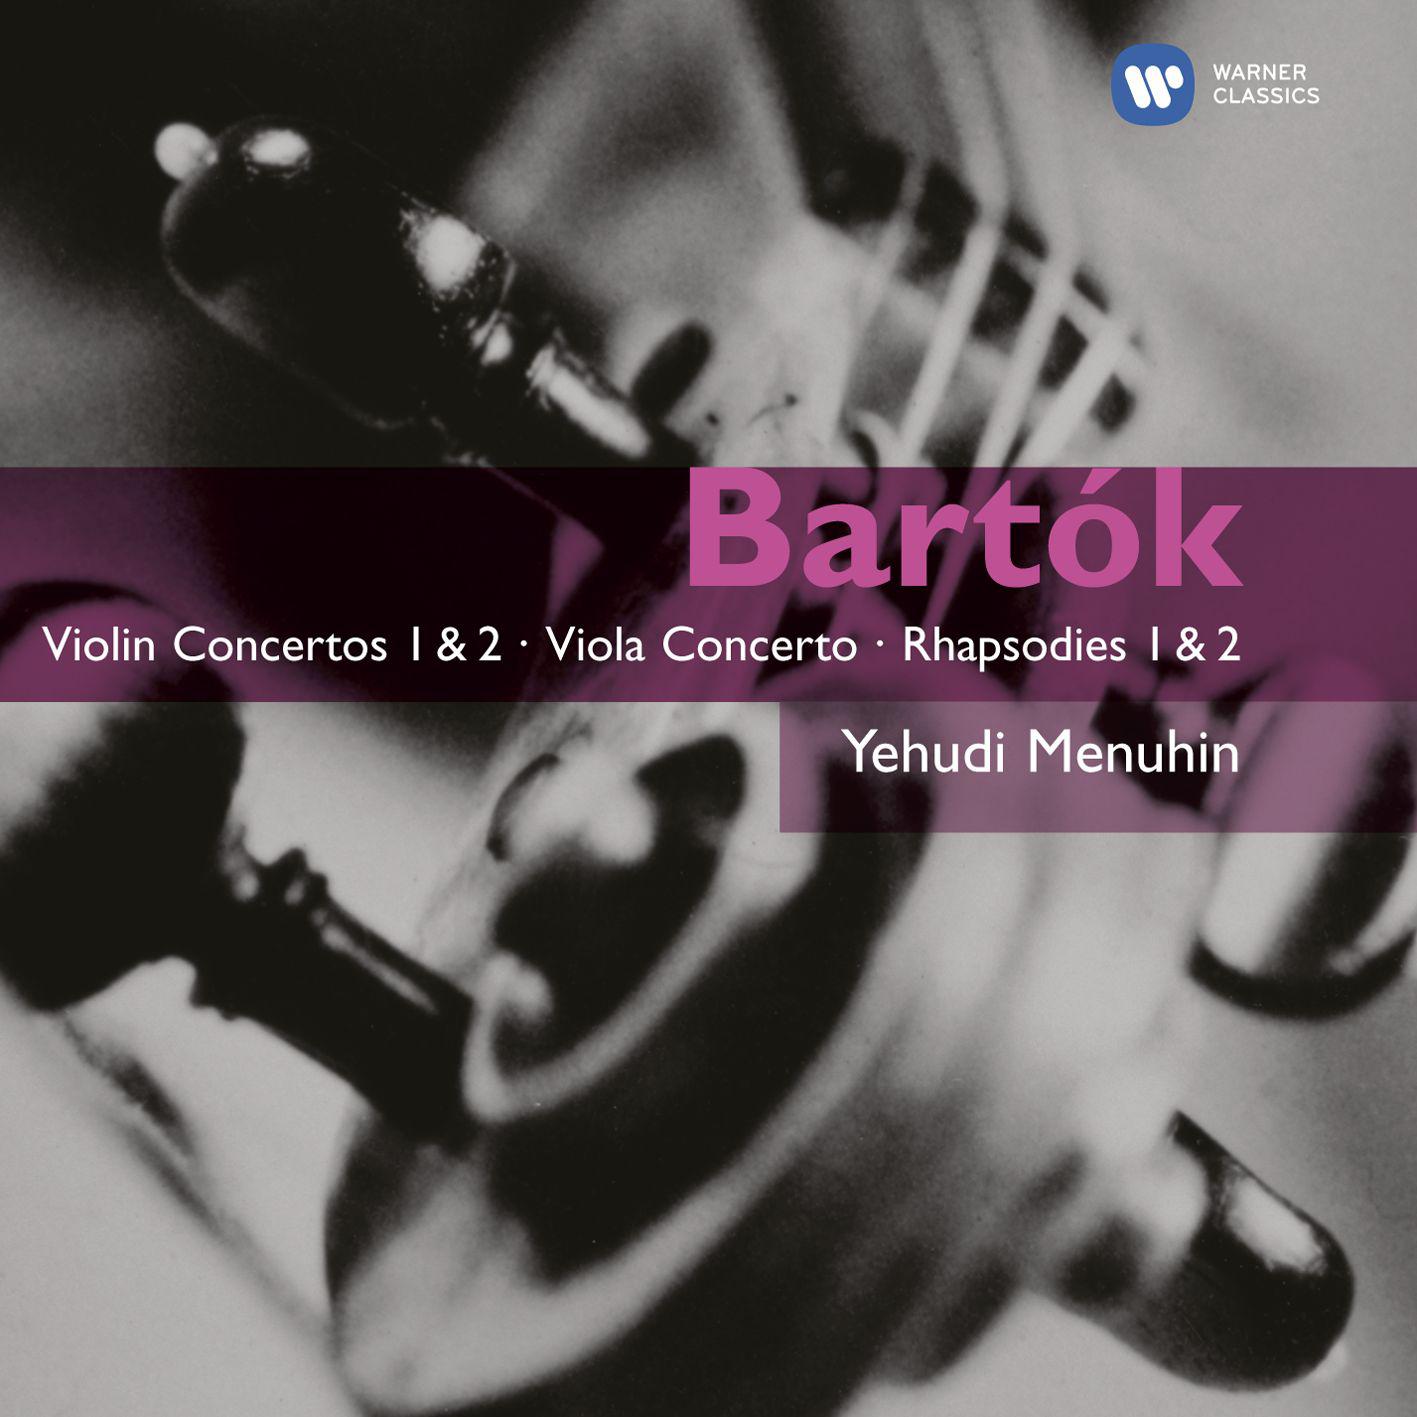 Bartók: Violin Concertos 1 & 2 - Viola Concerto - Rhapsodies 1 & 2